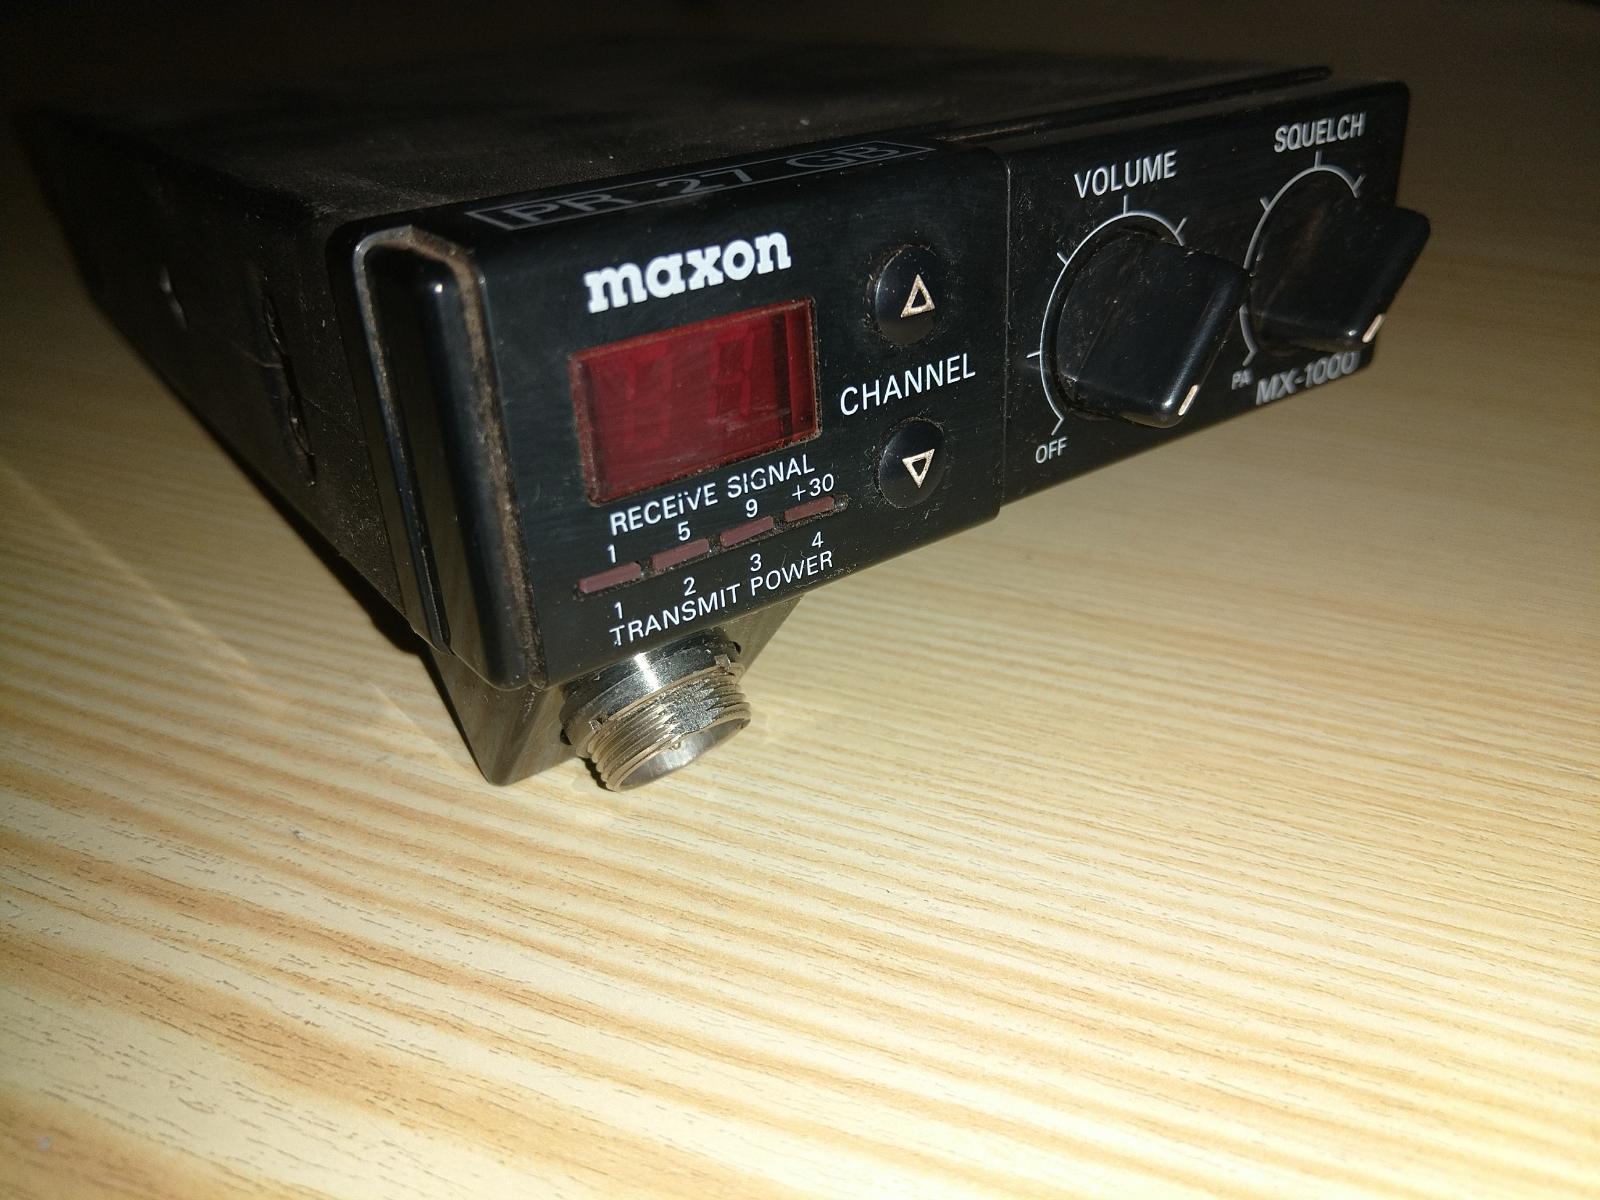 CB vysielačka Maxon MX-1000 na diely - undefined